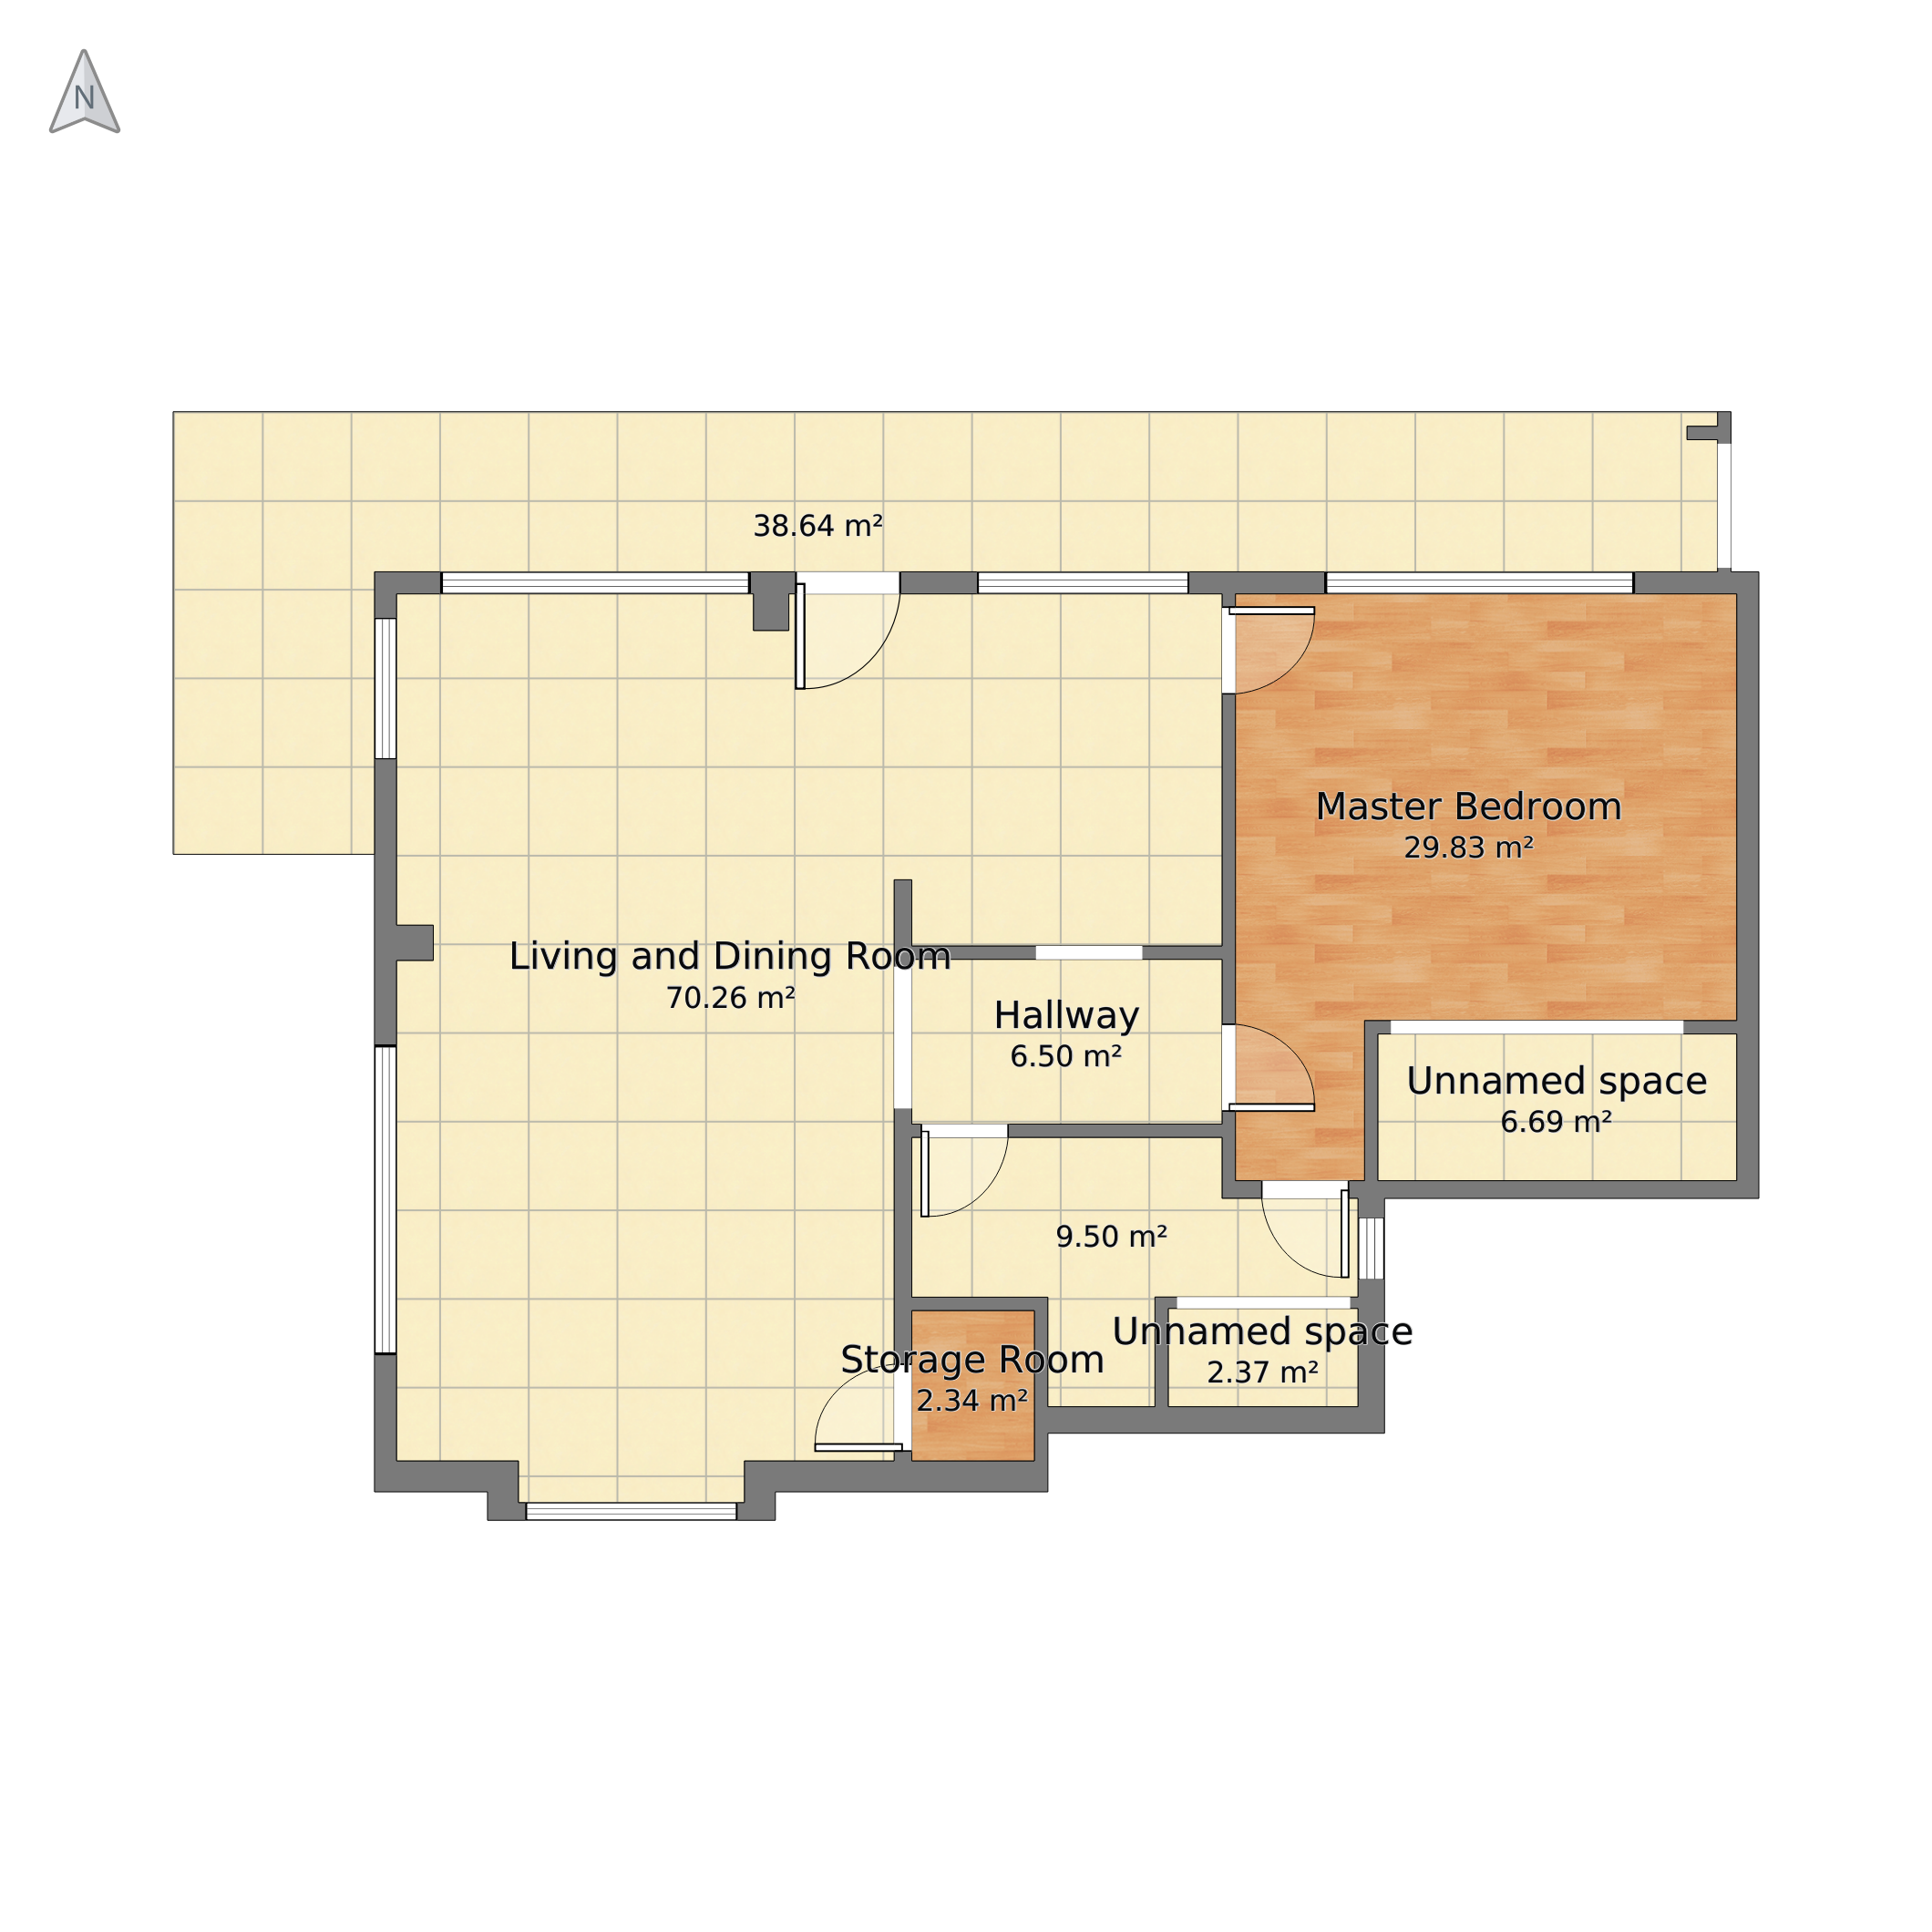 Residence Of Dexter Morgan - Floor Plan Clipart (2120x2120), Png Download